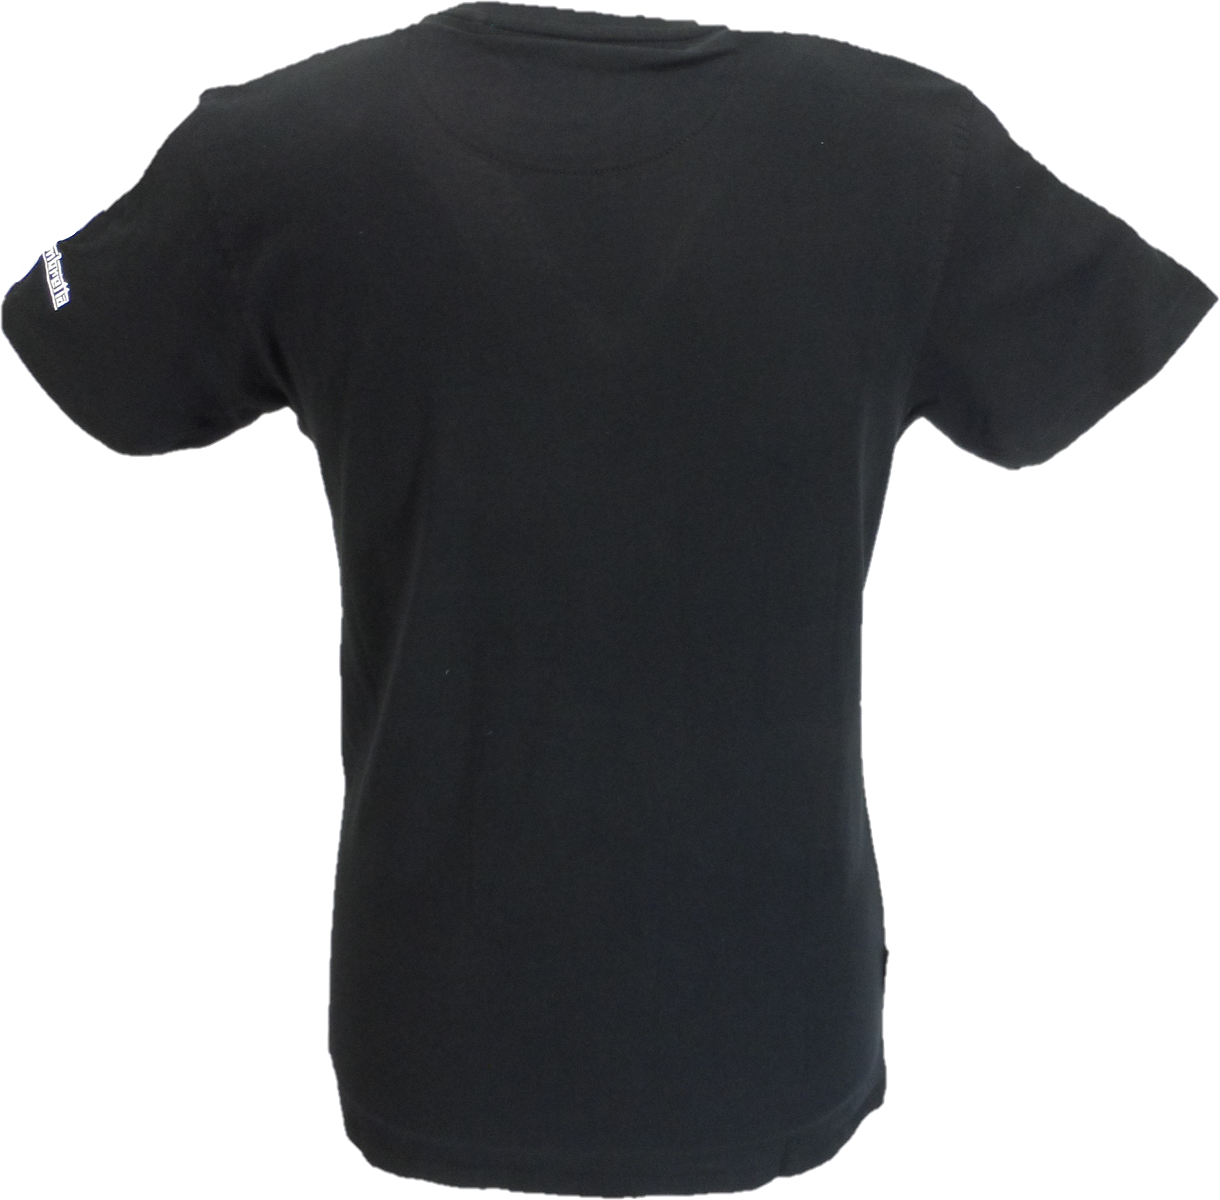 Lambretta Mens Black Badges Target Retro T Shirt